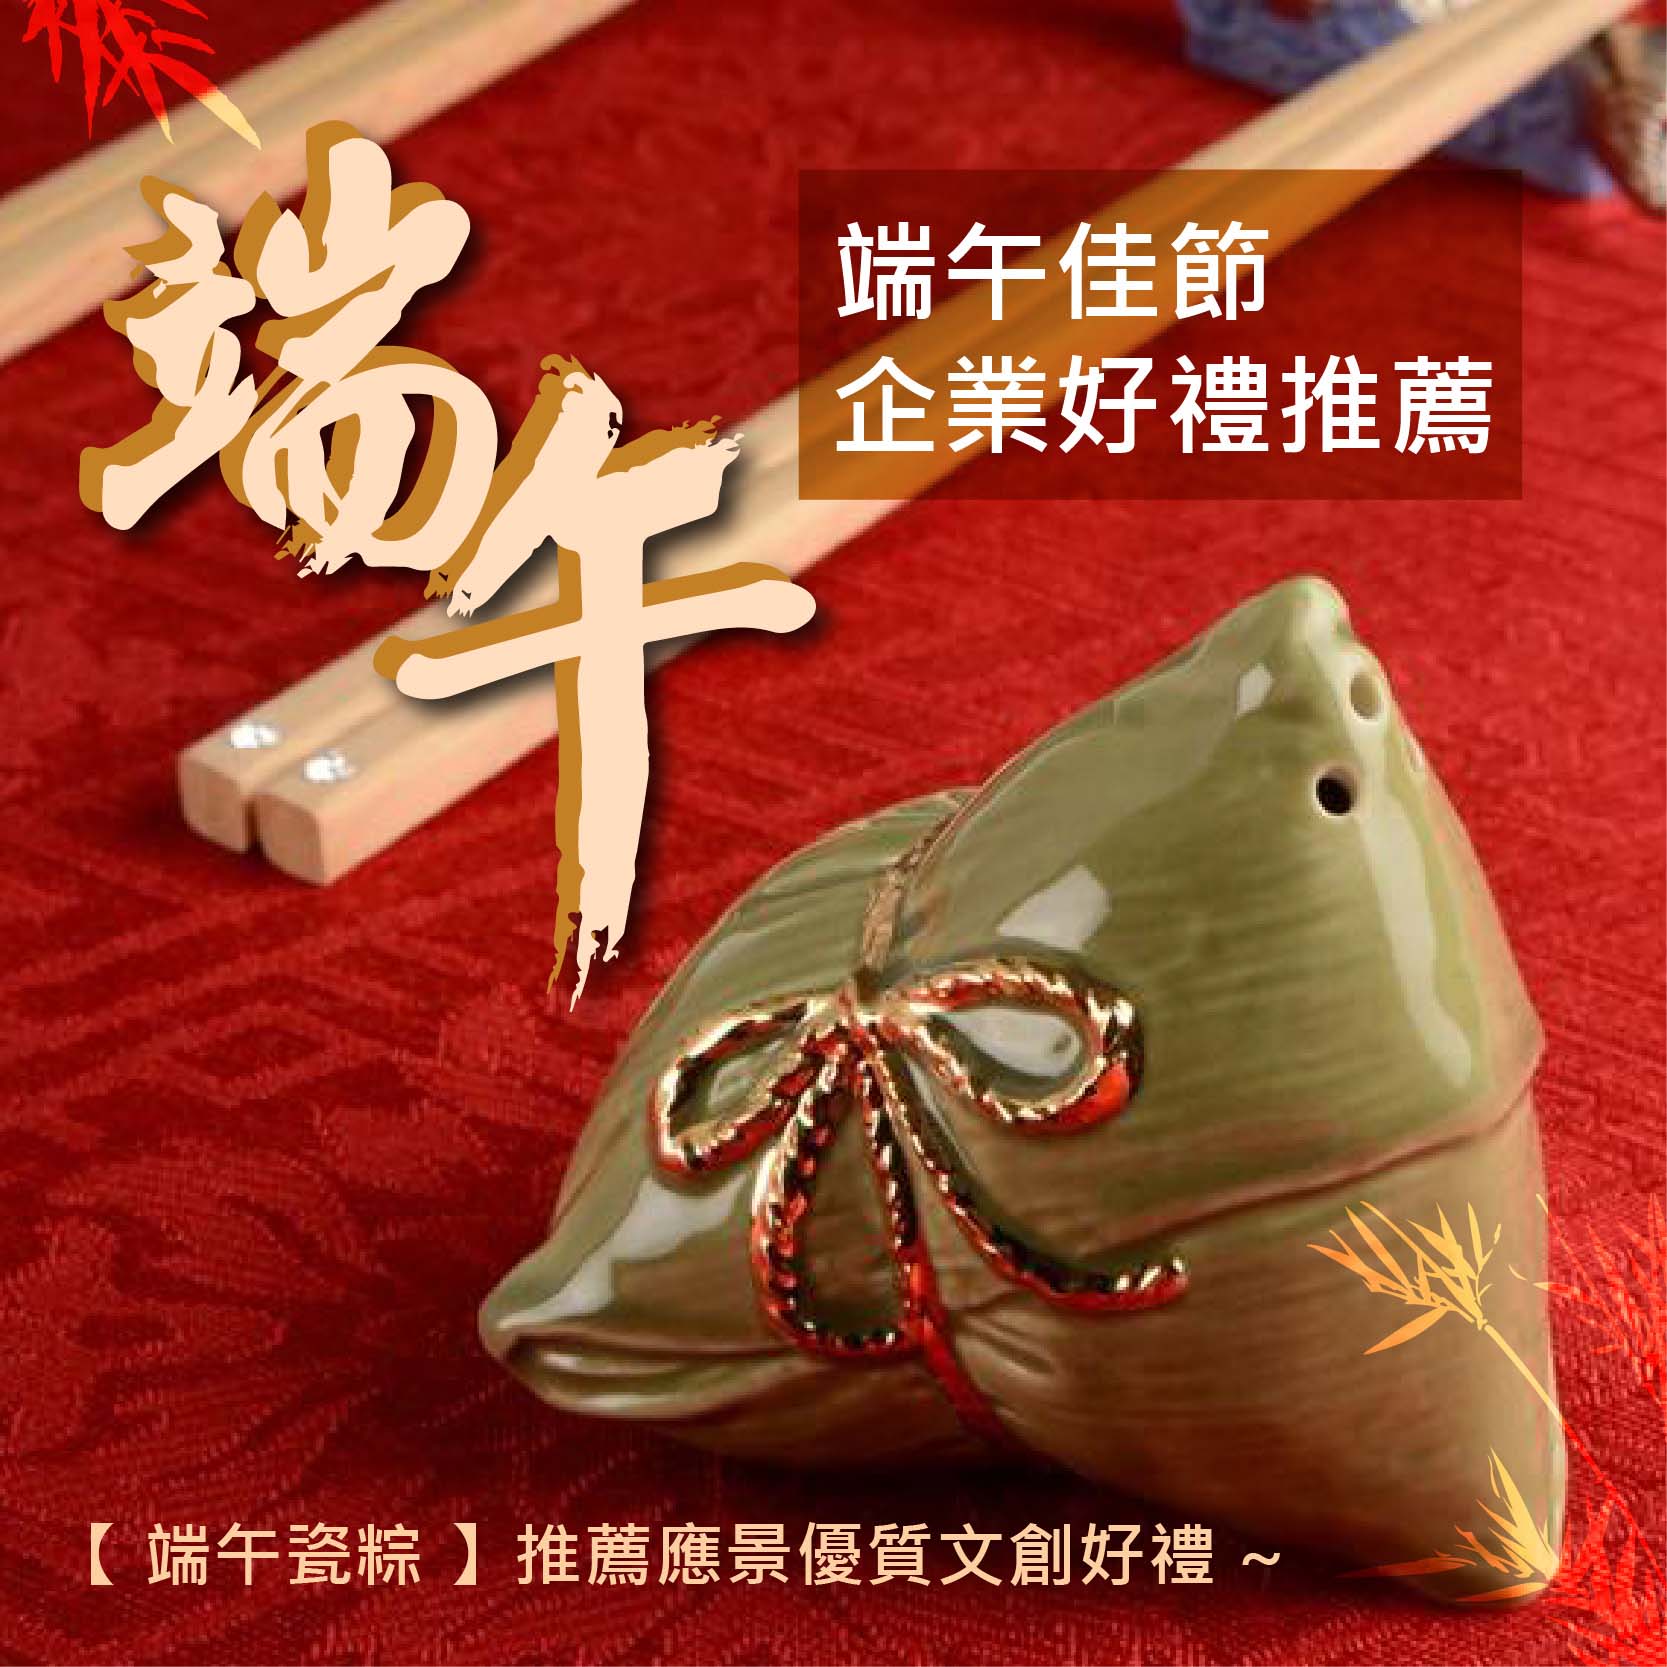 【 端午瓷粽 】推薦應景優質文創好禮 ~ Taiwan Ceramic zongzi